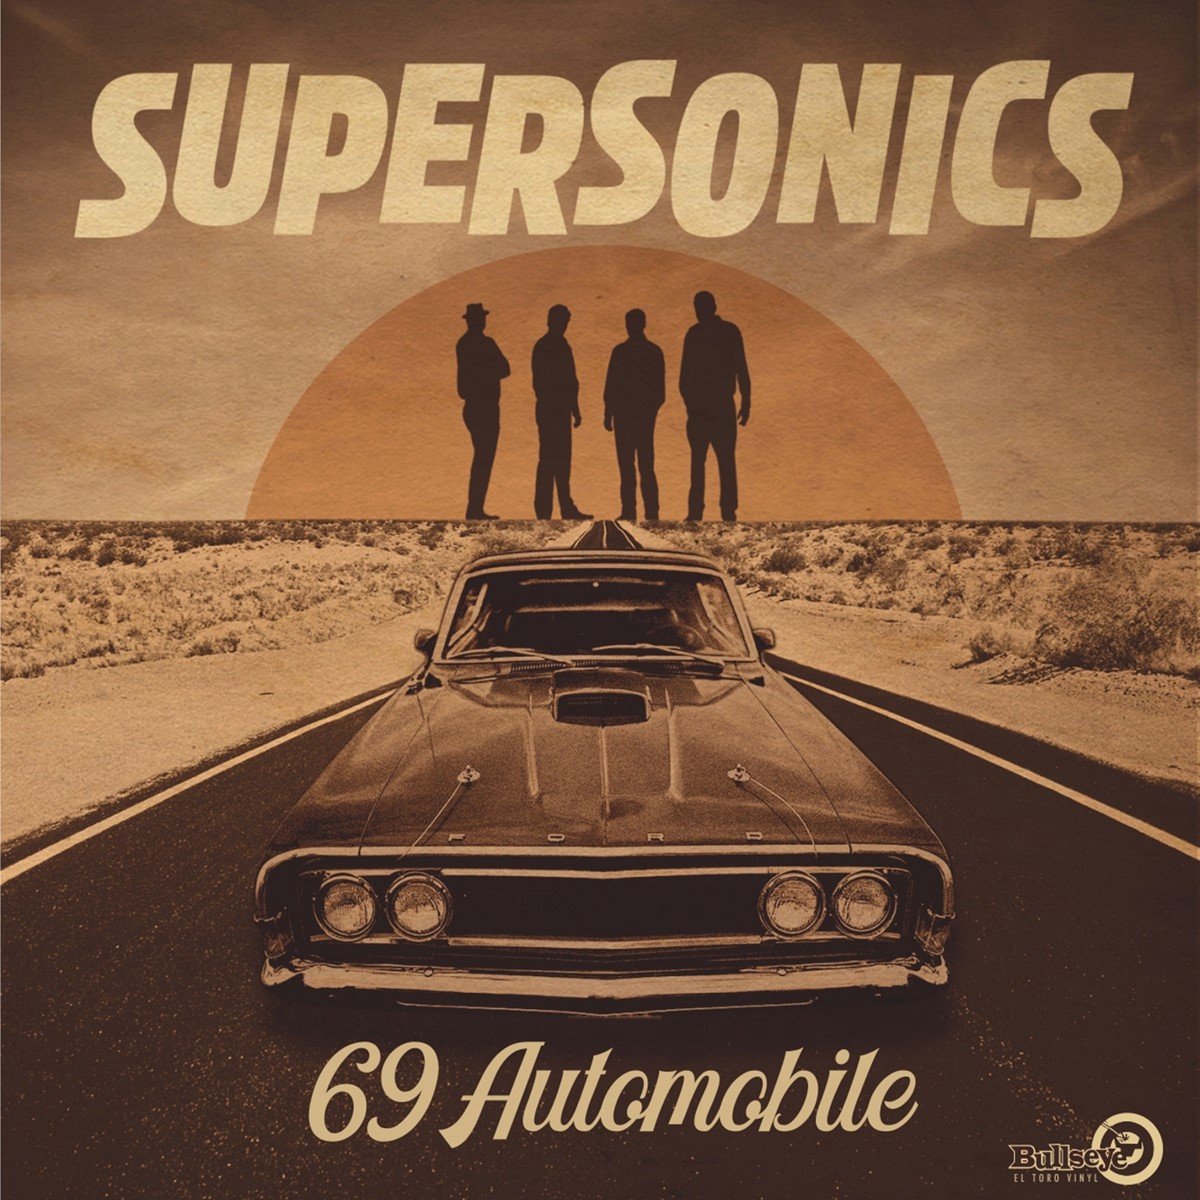 Supersonics - 69 Automobile (LP), Supersonics